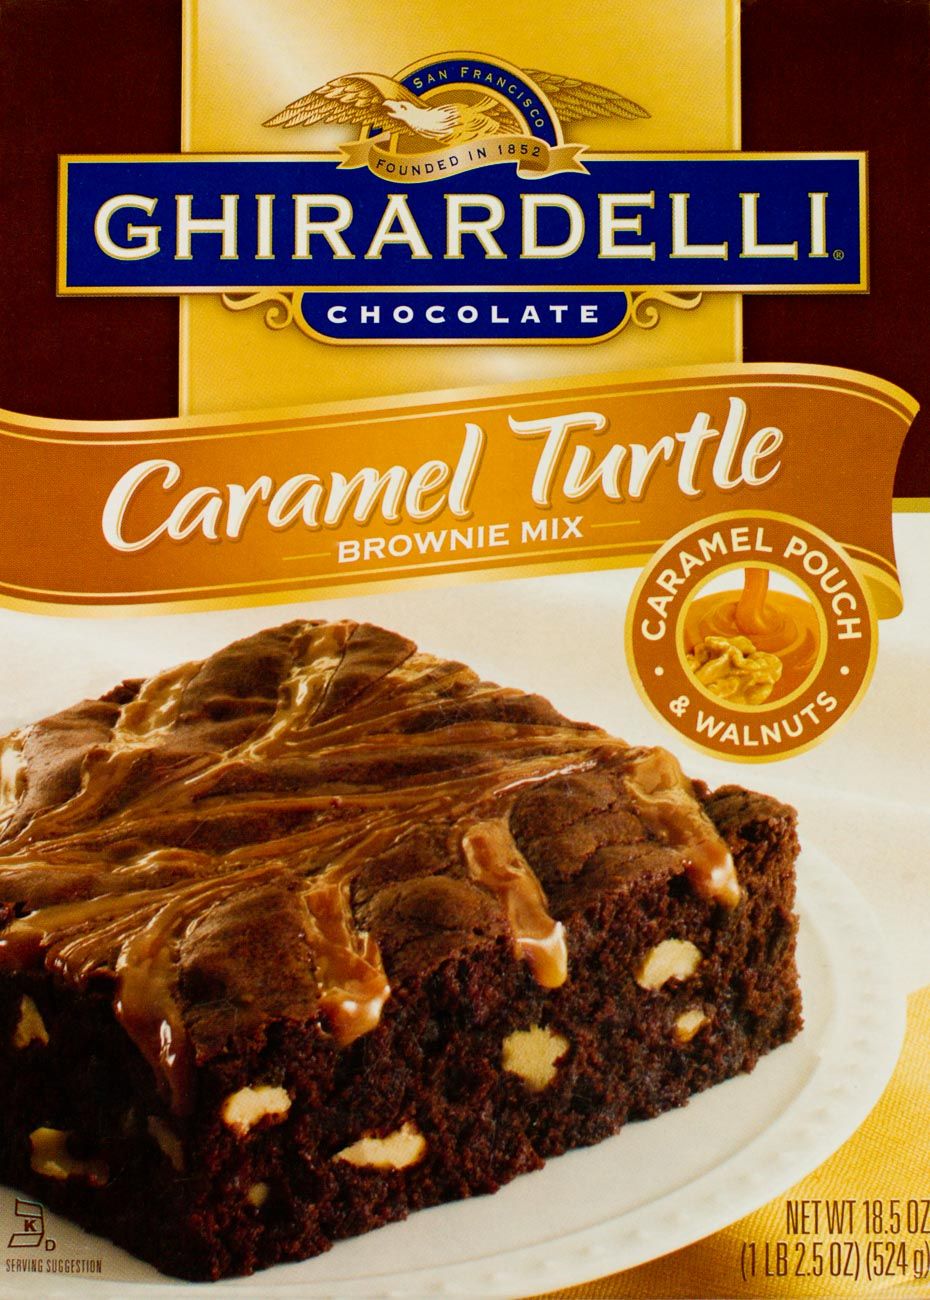 Ghirardelli chocolate brownie packaging